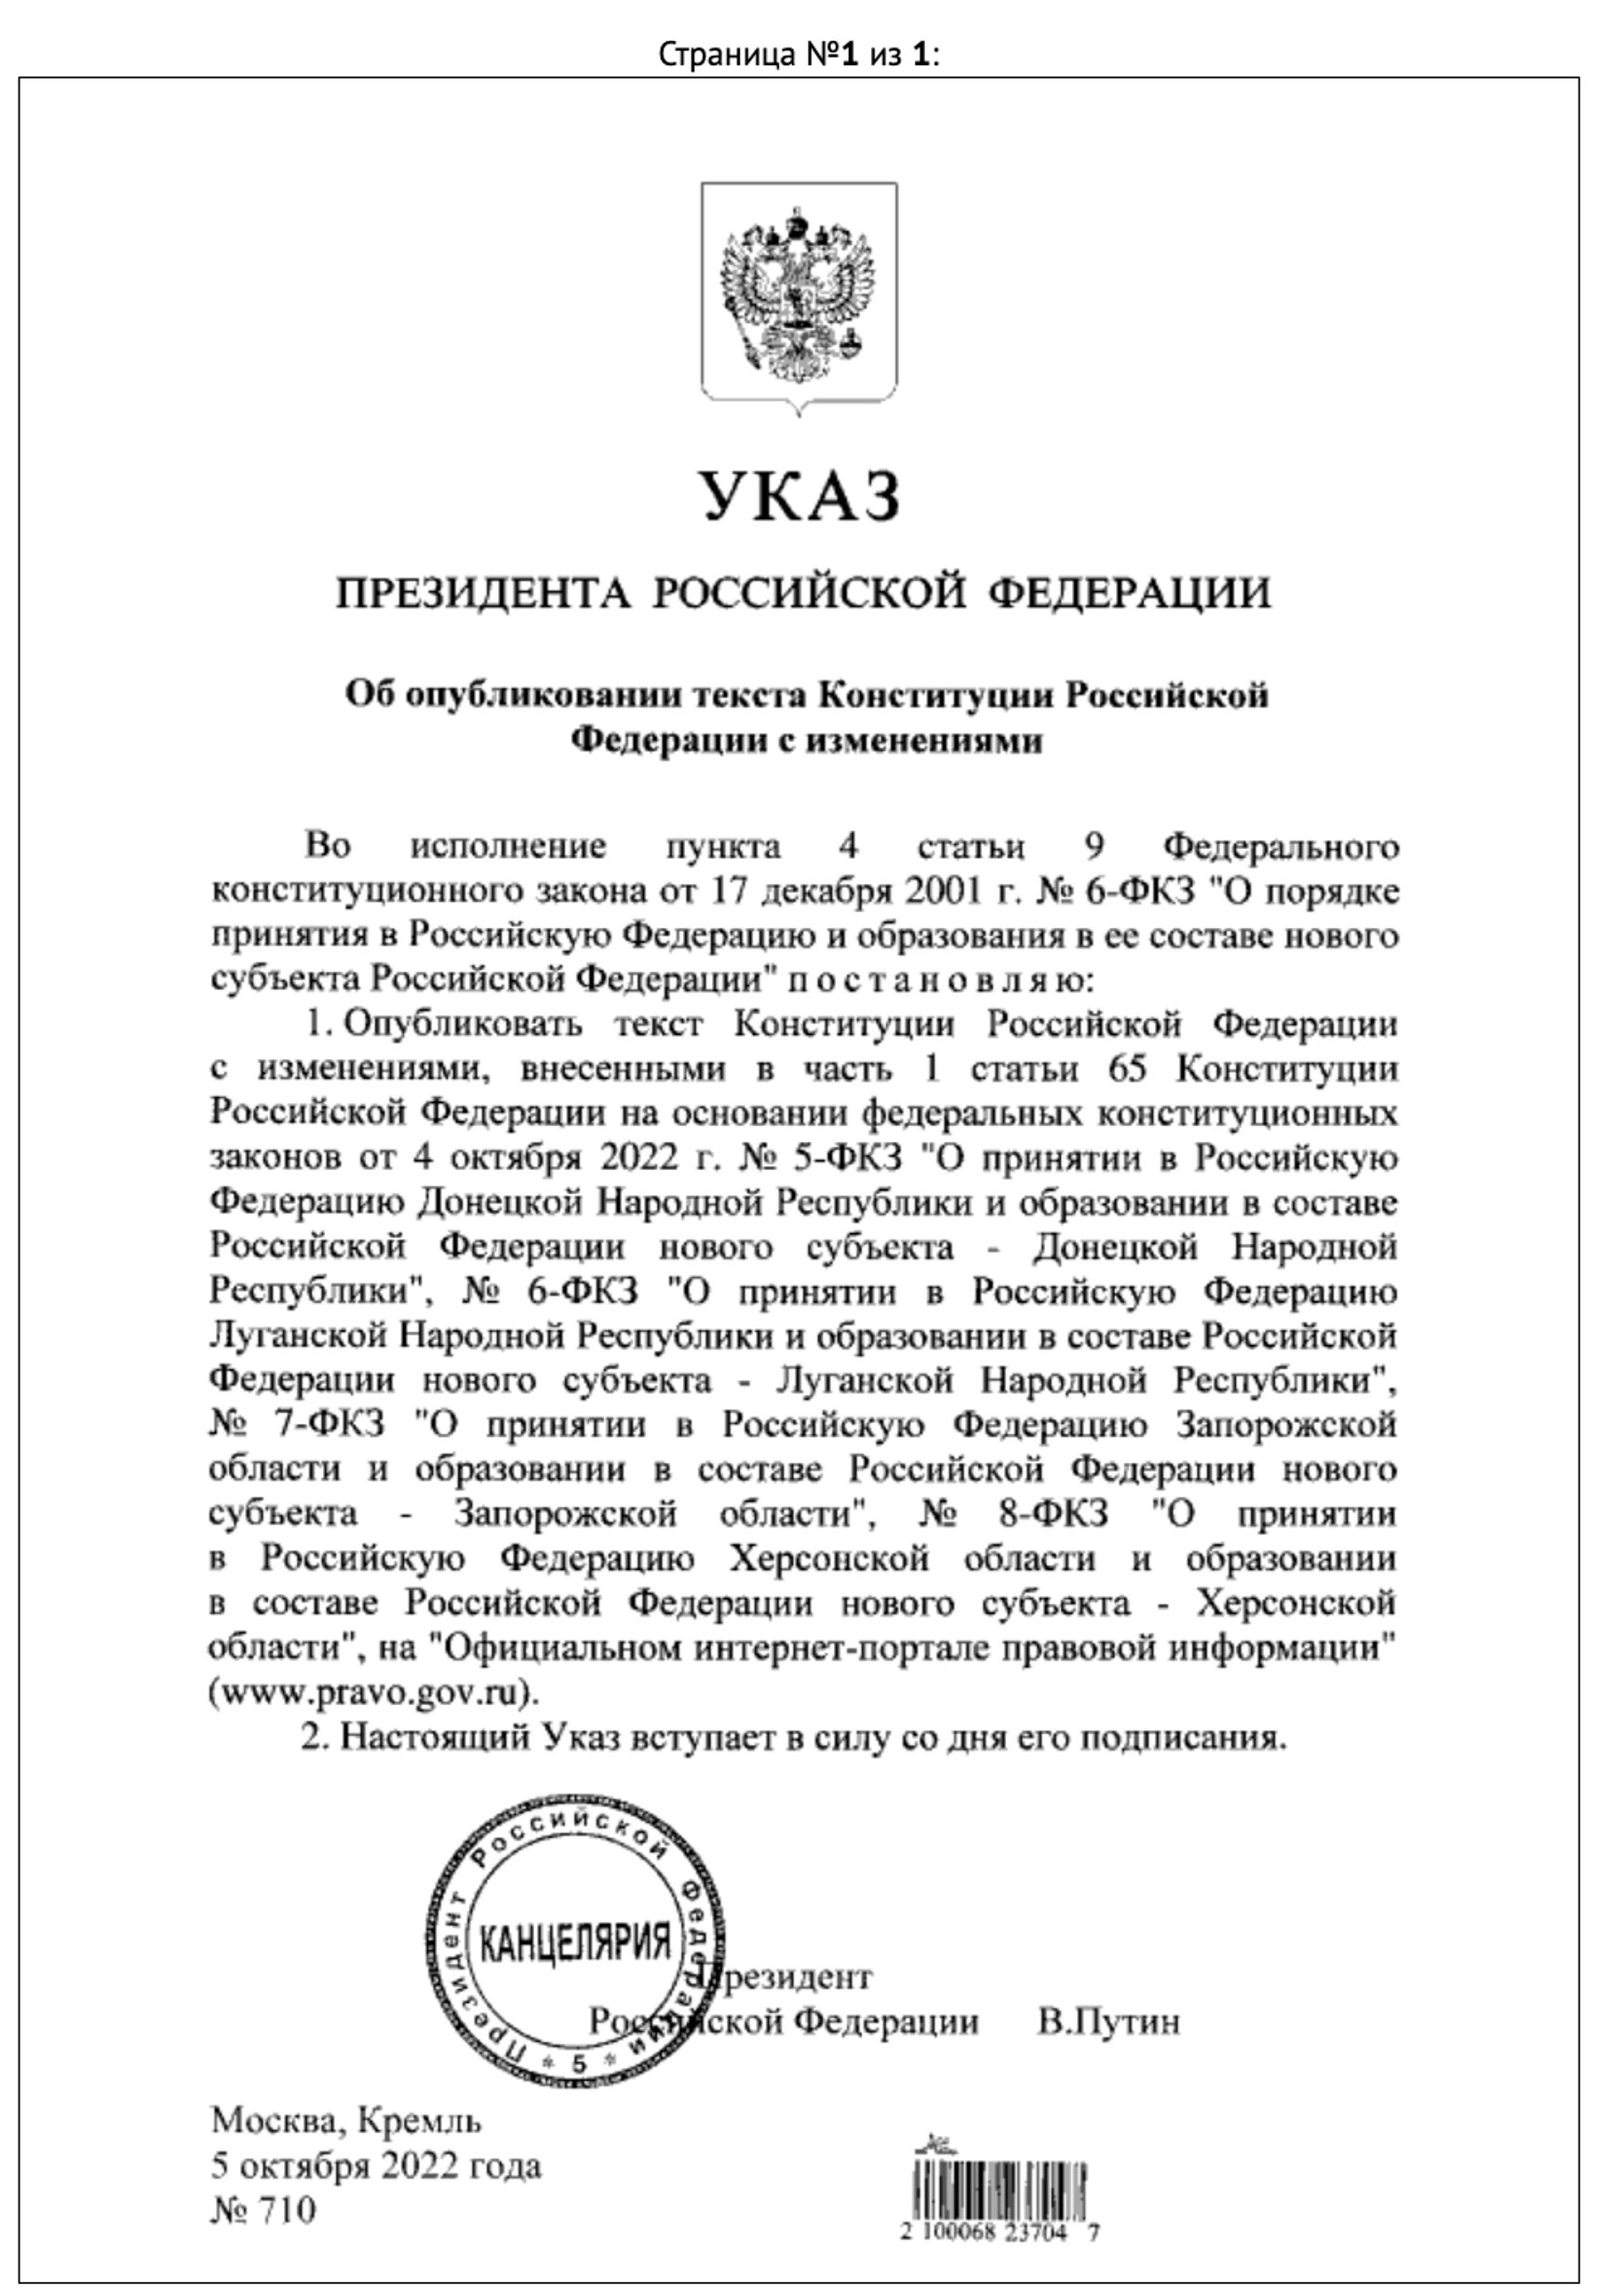 Путин снова изменил Конституцию России. Правки в текст внесены после аннексии регионов Украины